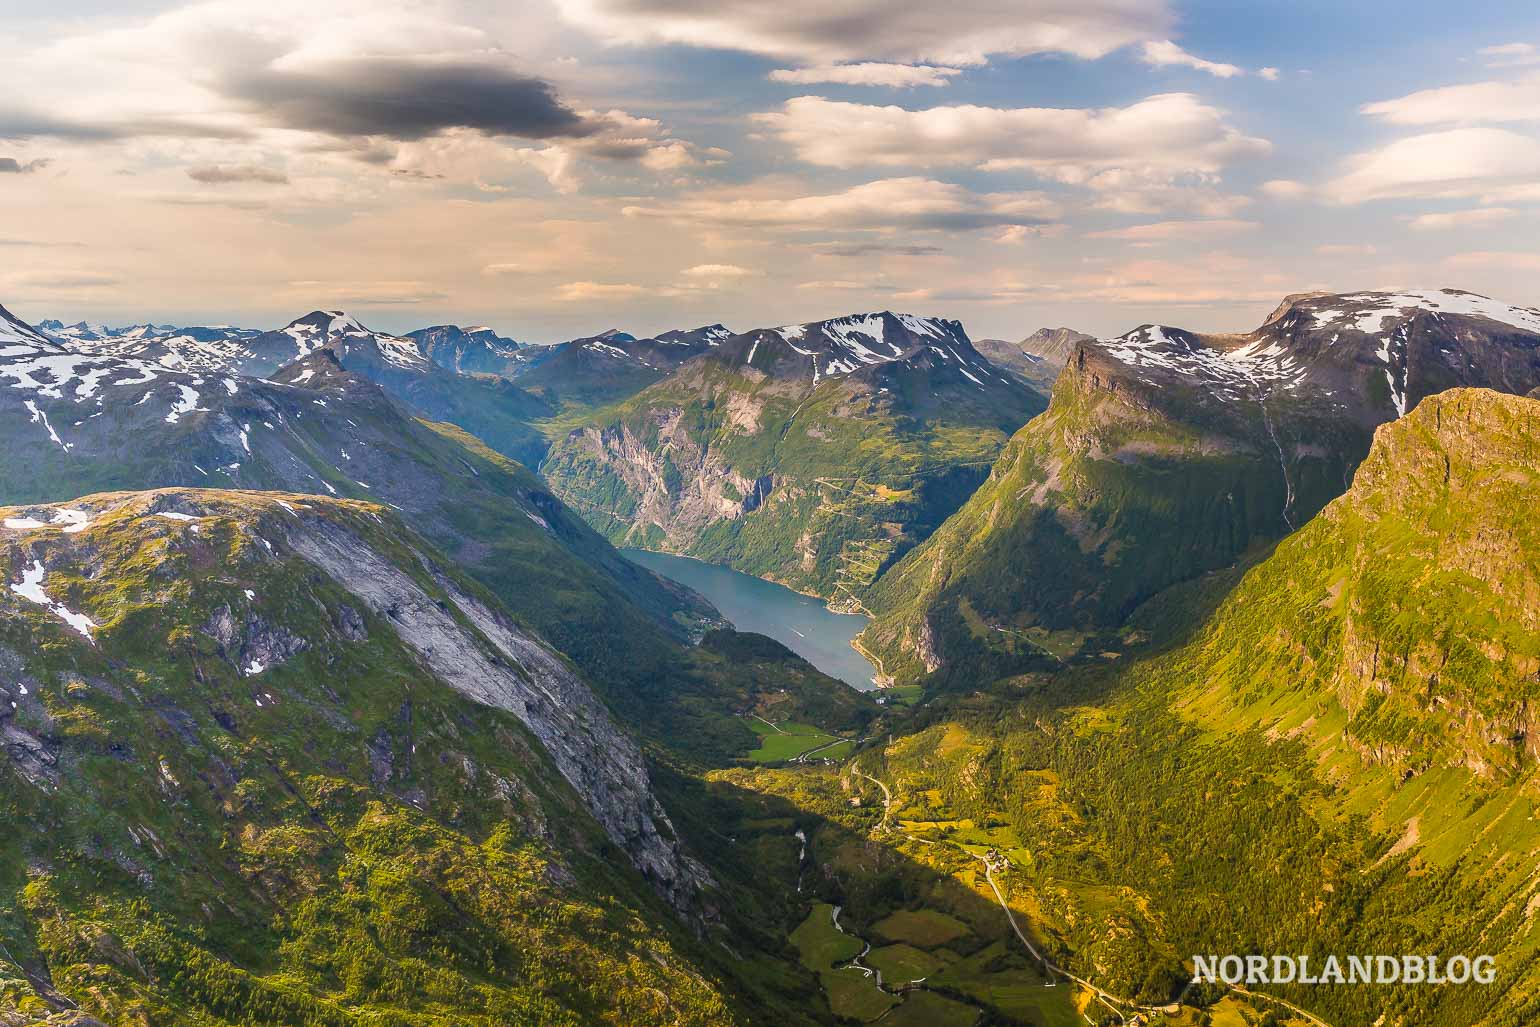 Blick vom Dalsnibba auf den Geirangerfjord in Norwegen (Nordlandblog)